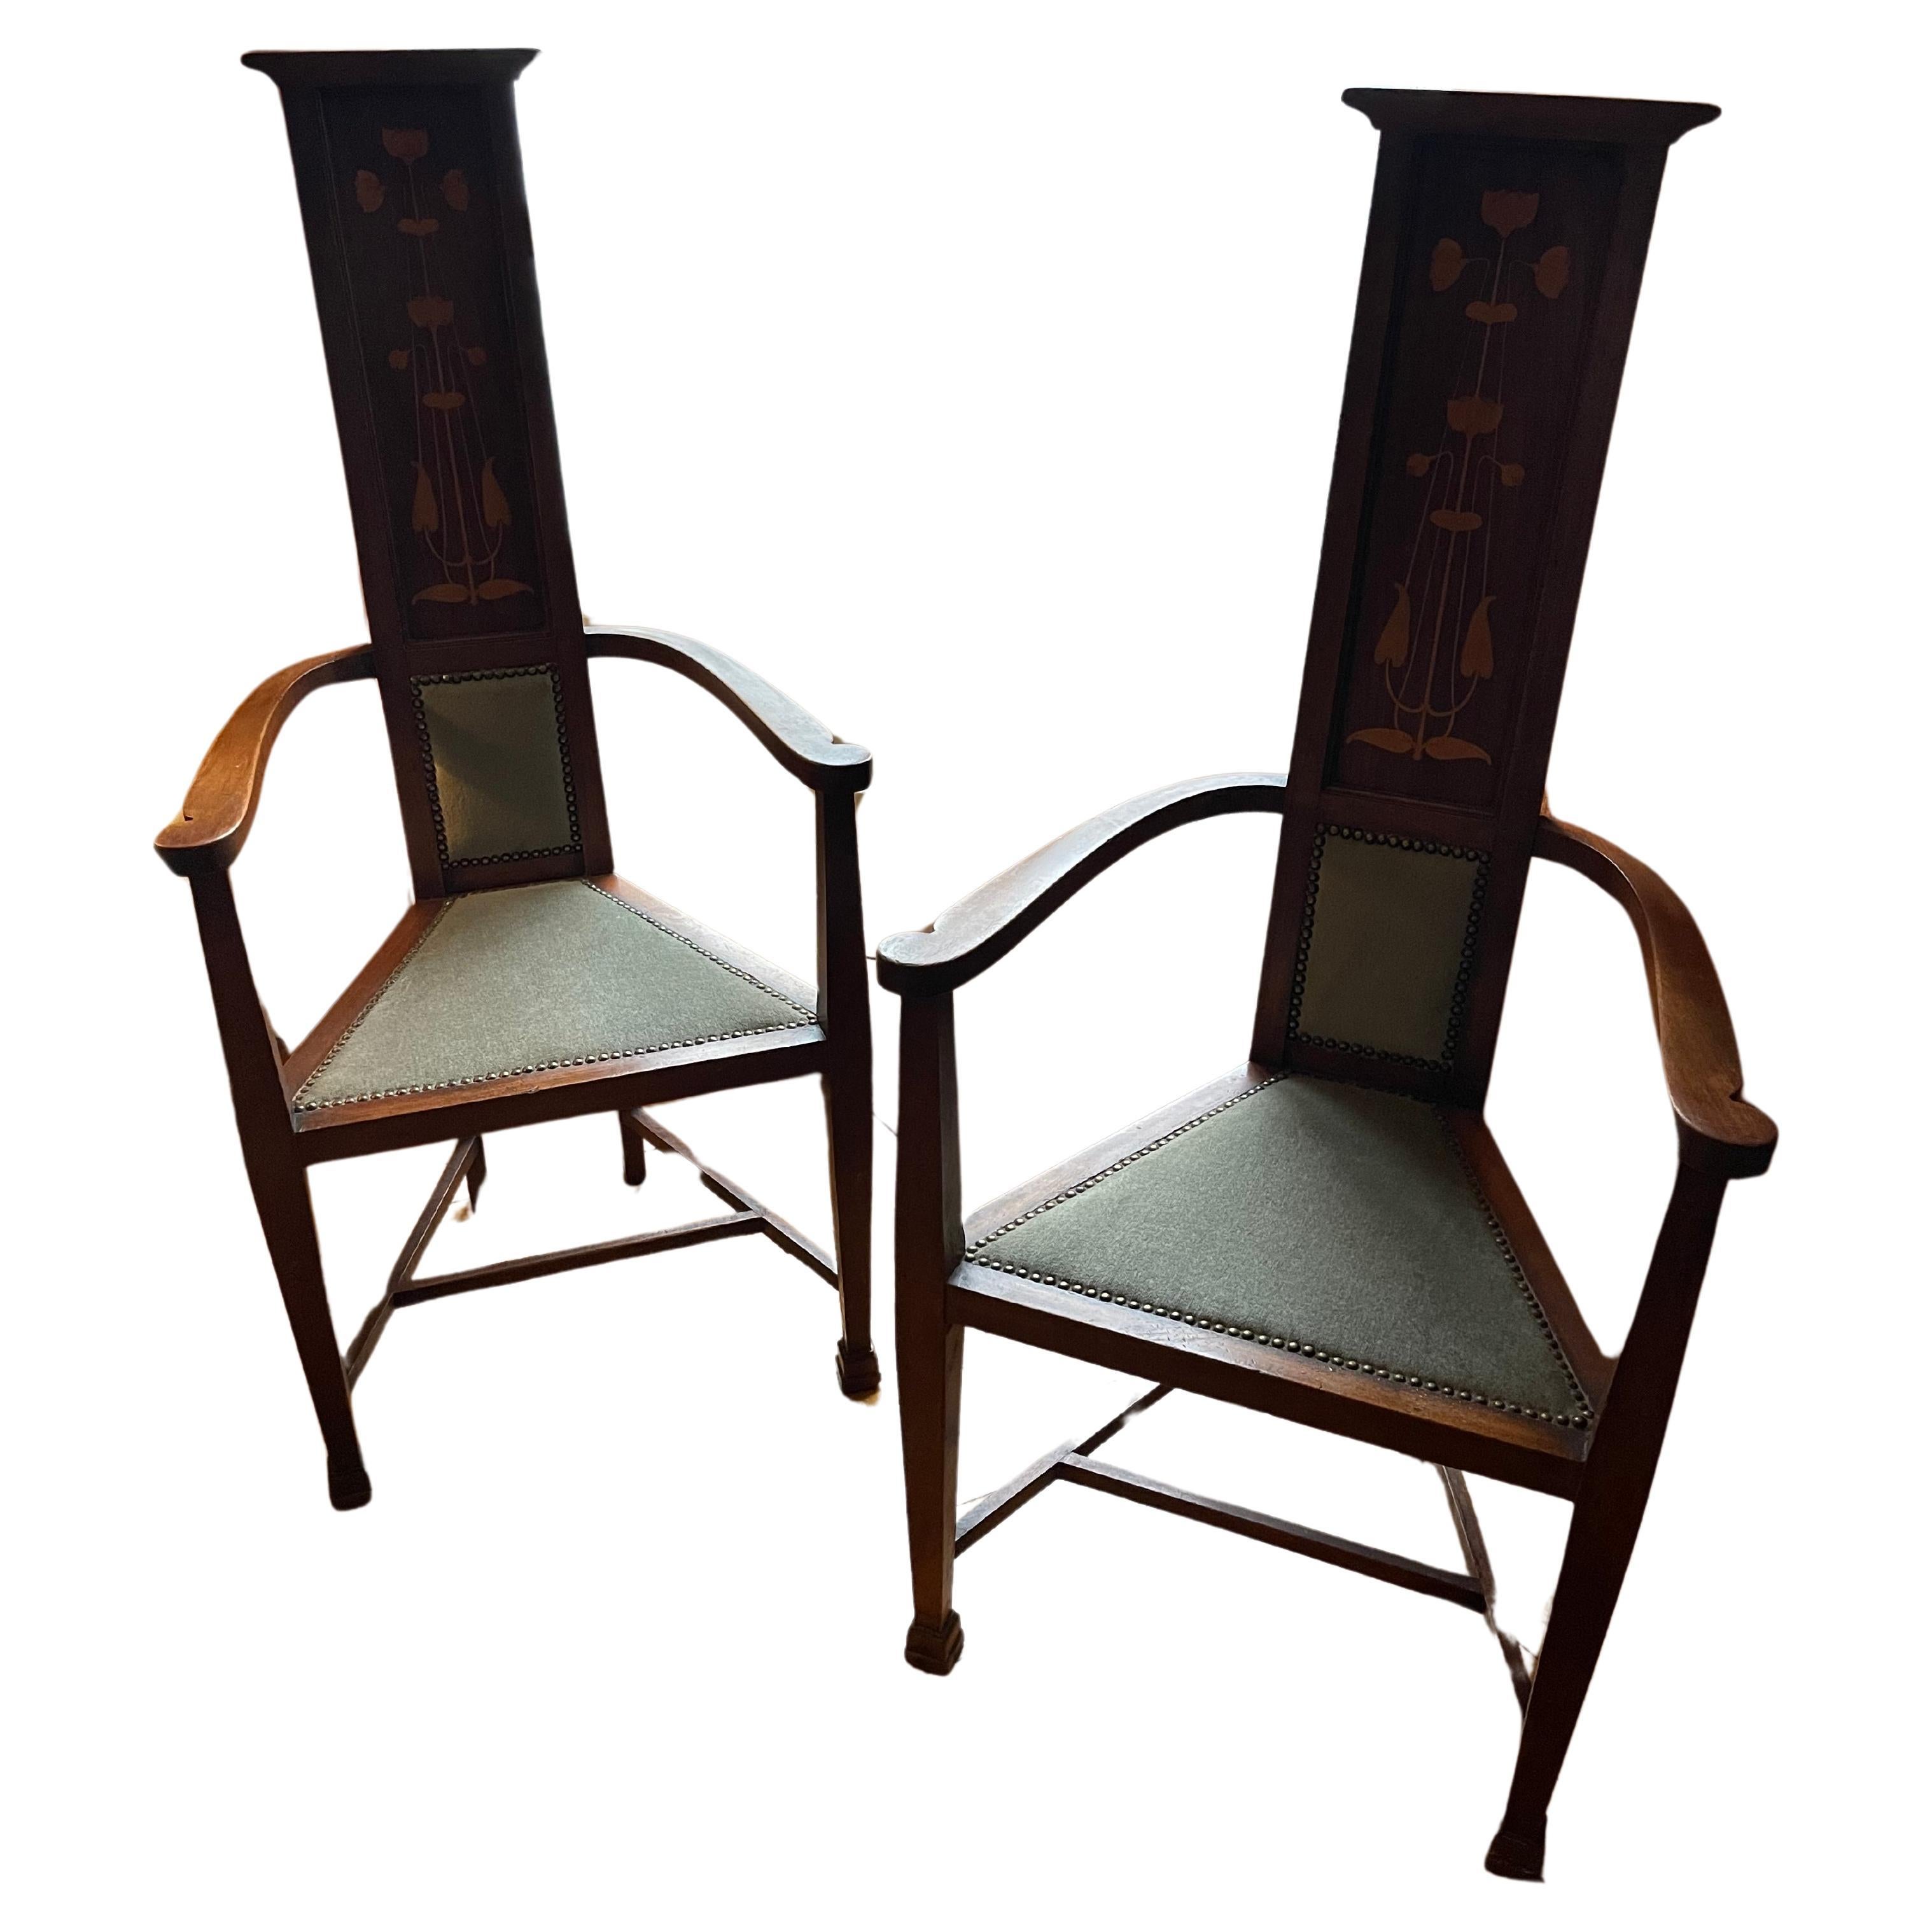 Paire de chaises en noyer, velours, et décorations peintes. Frankreich, début xxe